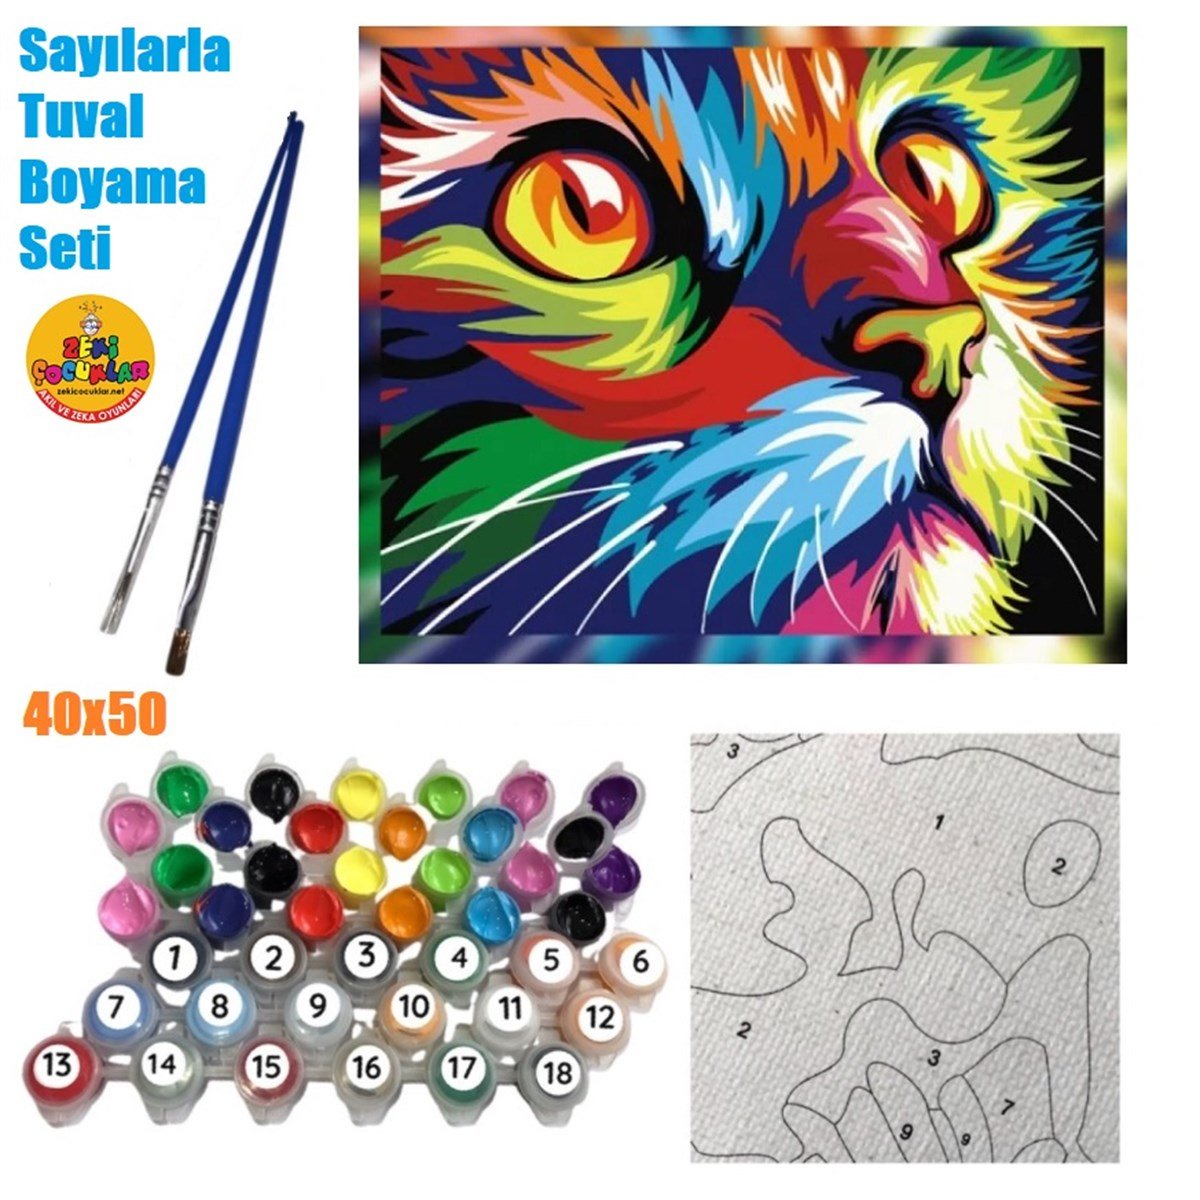 Sayılarla Tuval Boyama Ahşap Çerçeveli Kedi Renk Karnavalı + Fırça +  Akrilik Boyalar